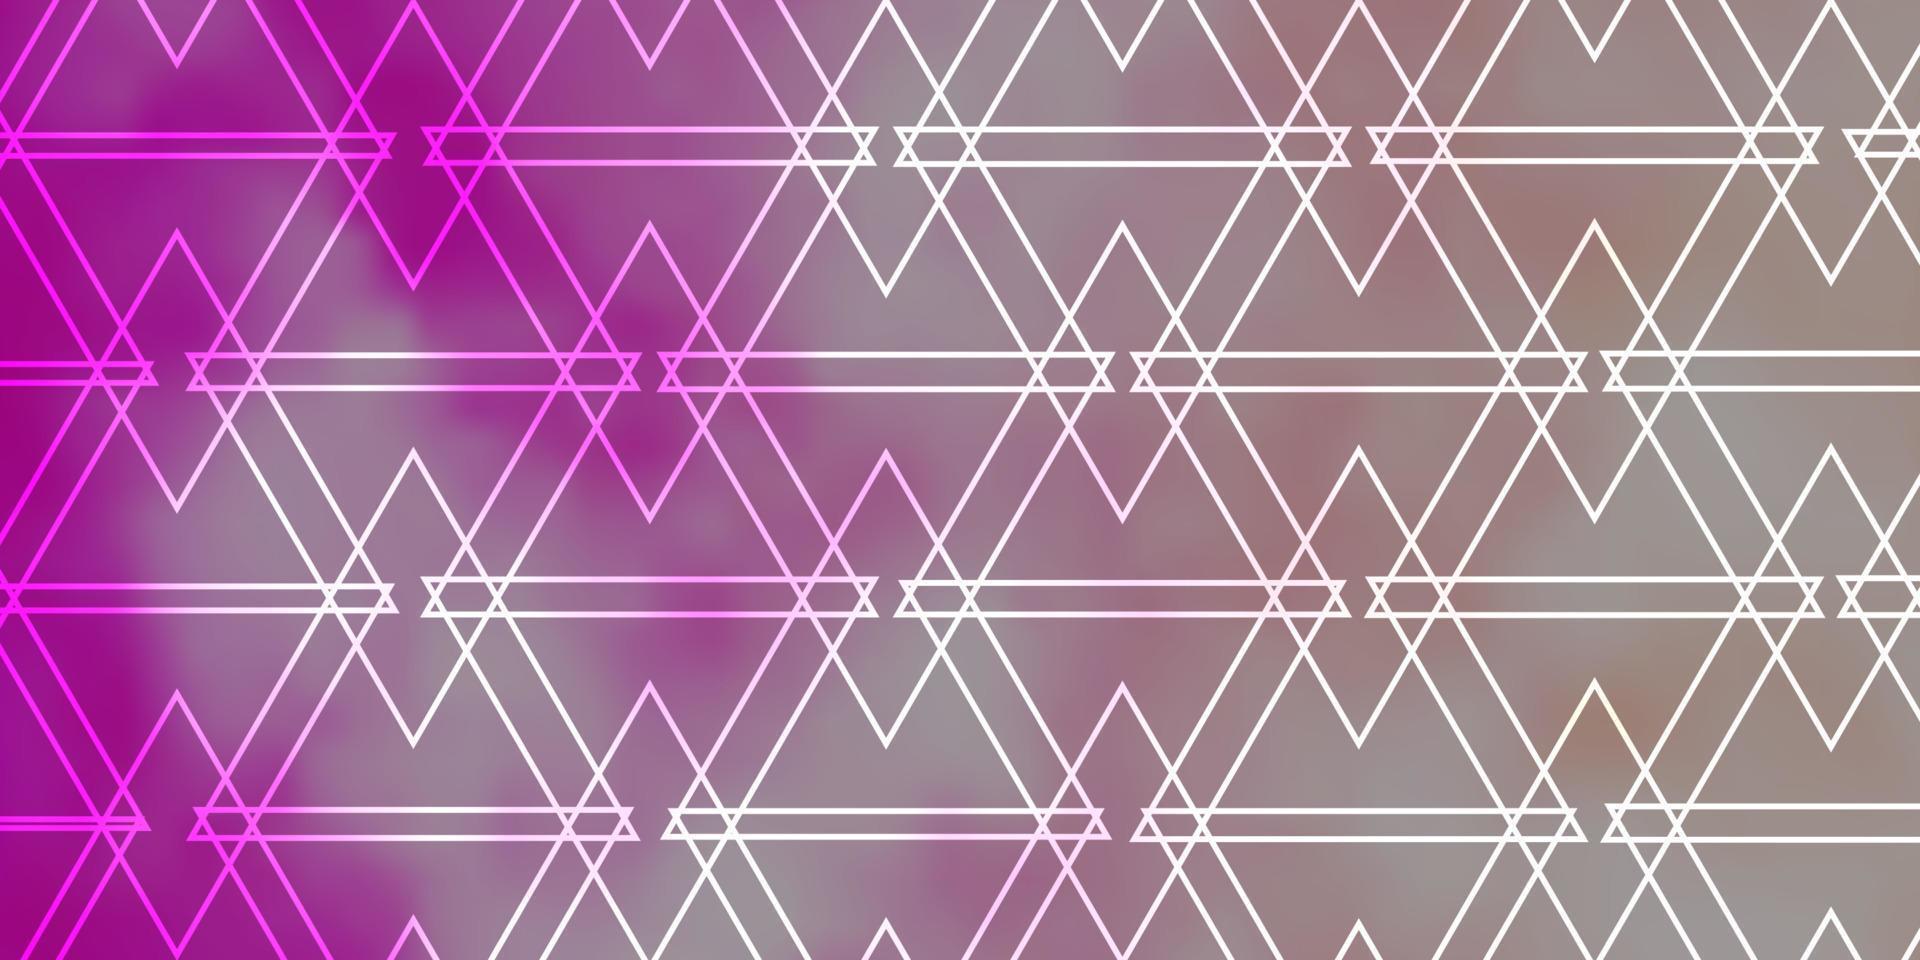 layout de vetor rosa claro com linhas, triângulos.